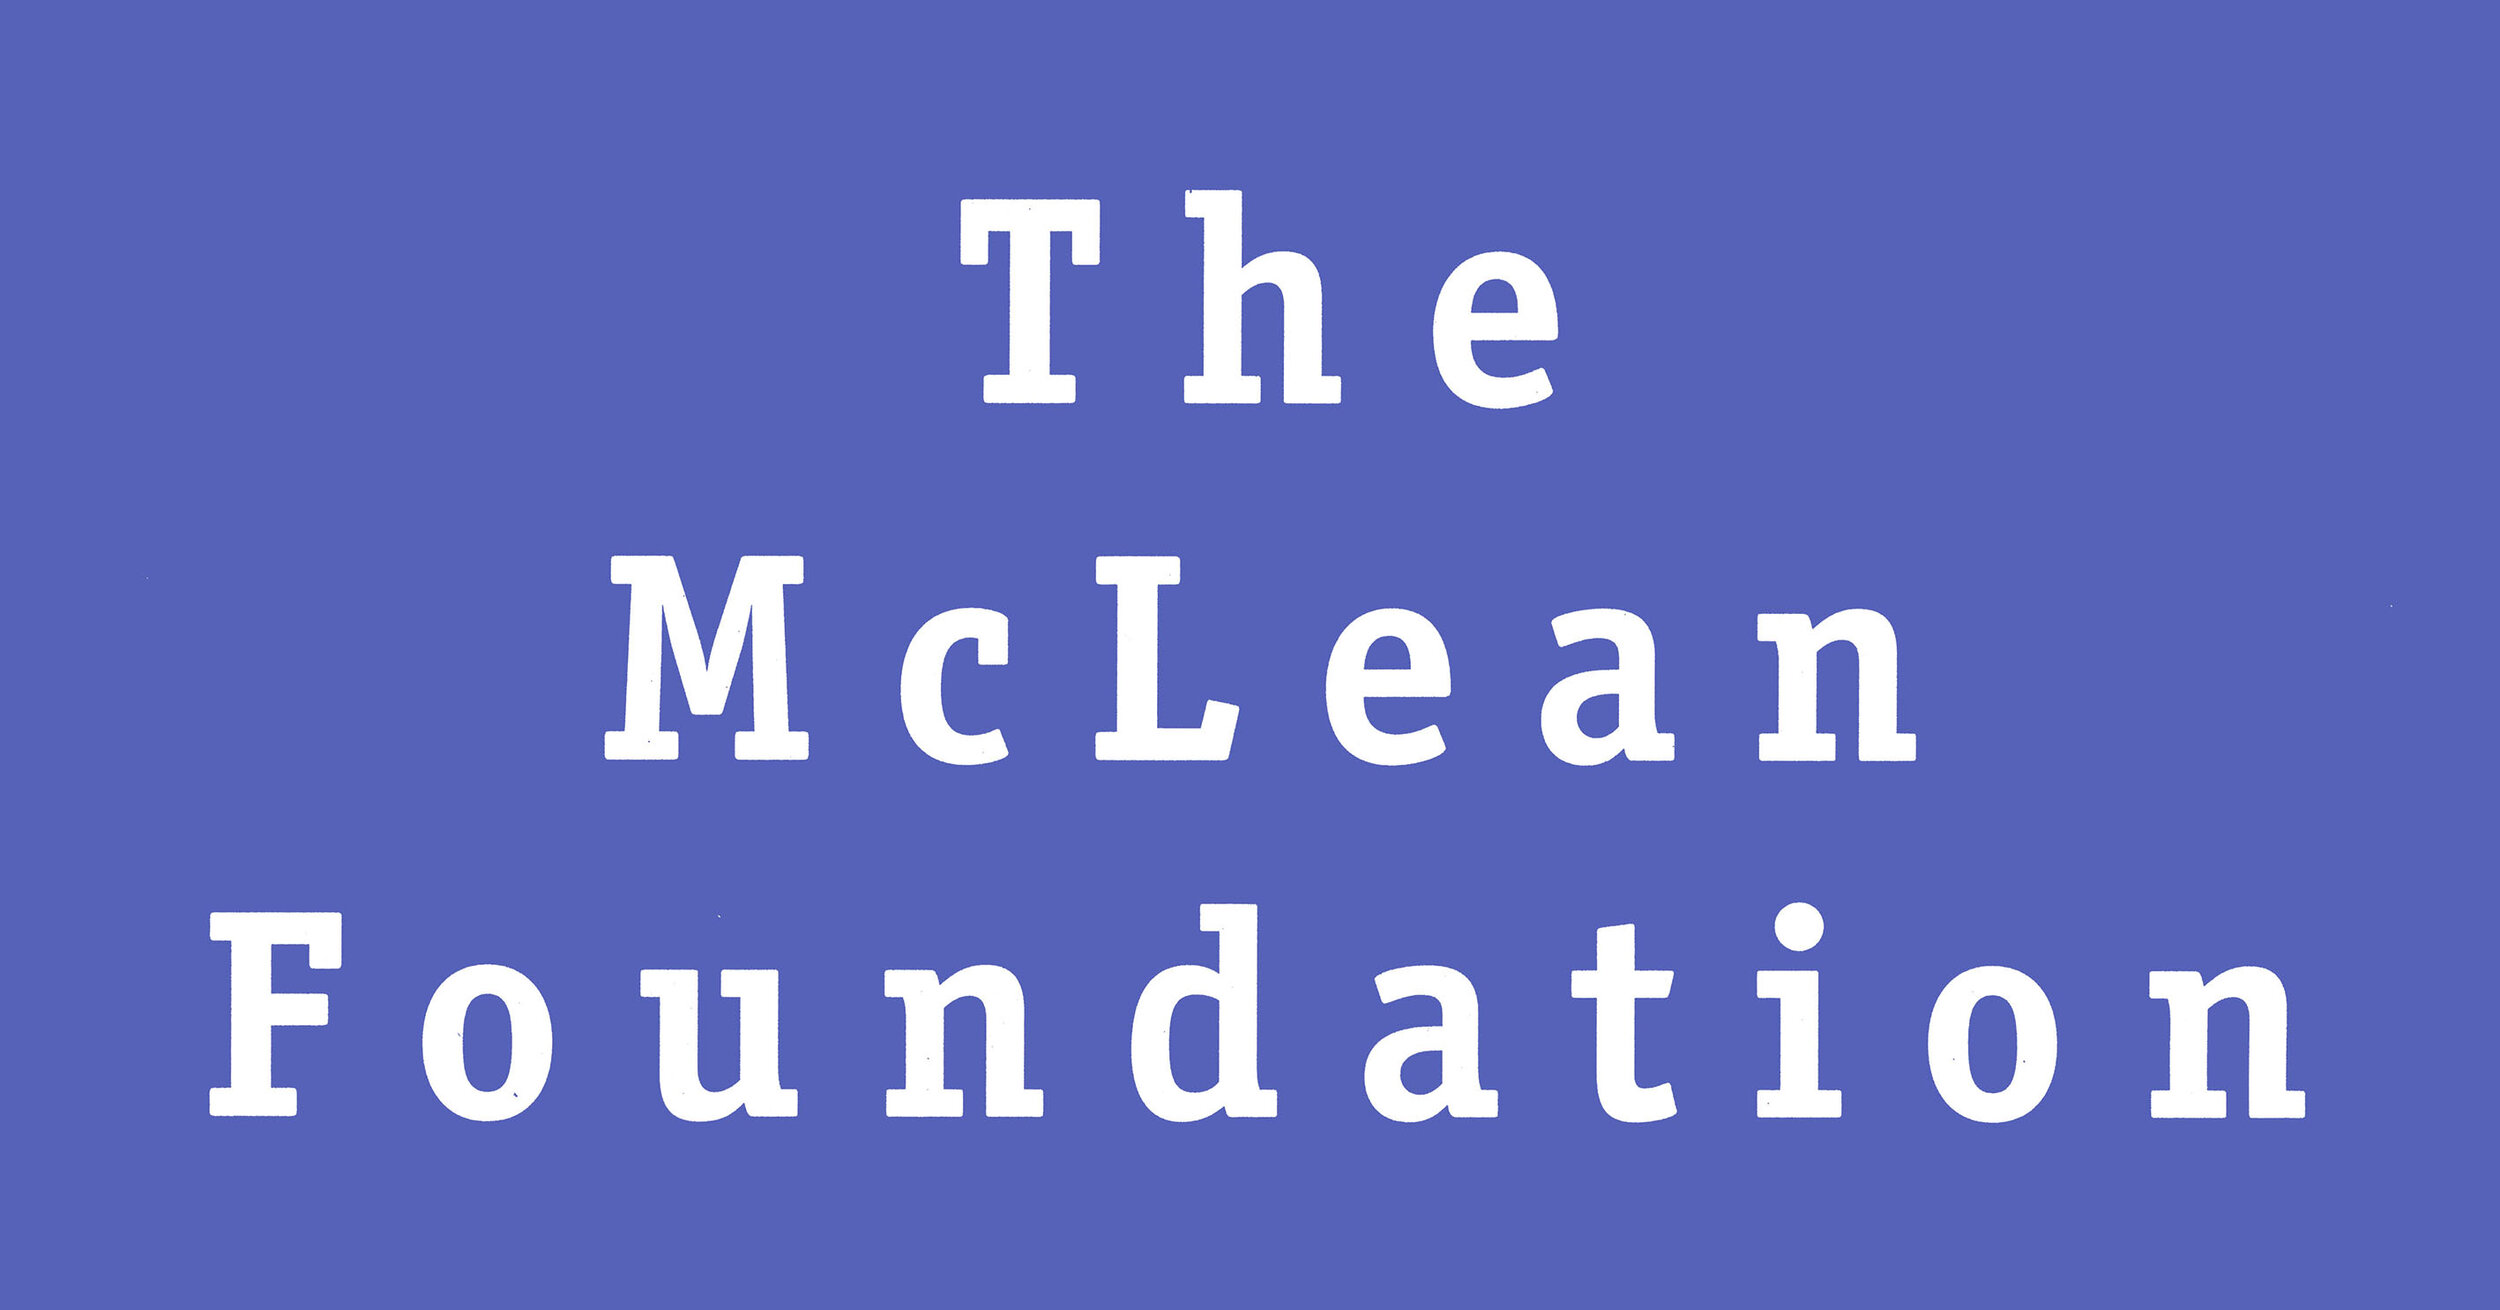 McLean_Foundation_logo_reversed_600dpi-resized.jpg